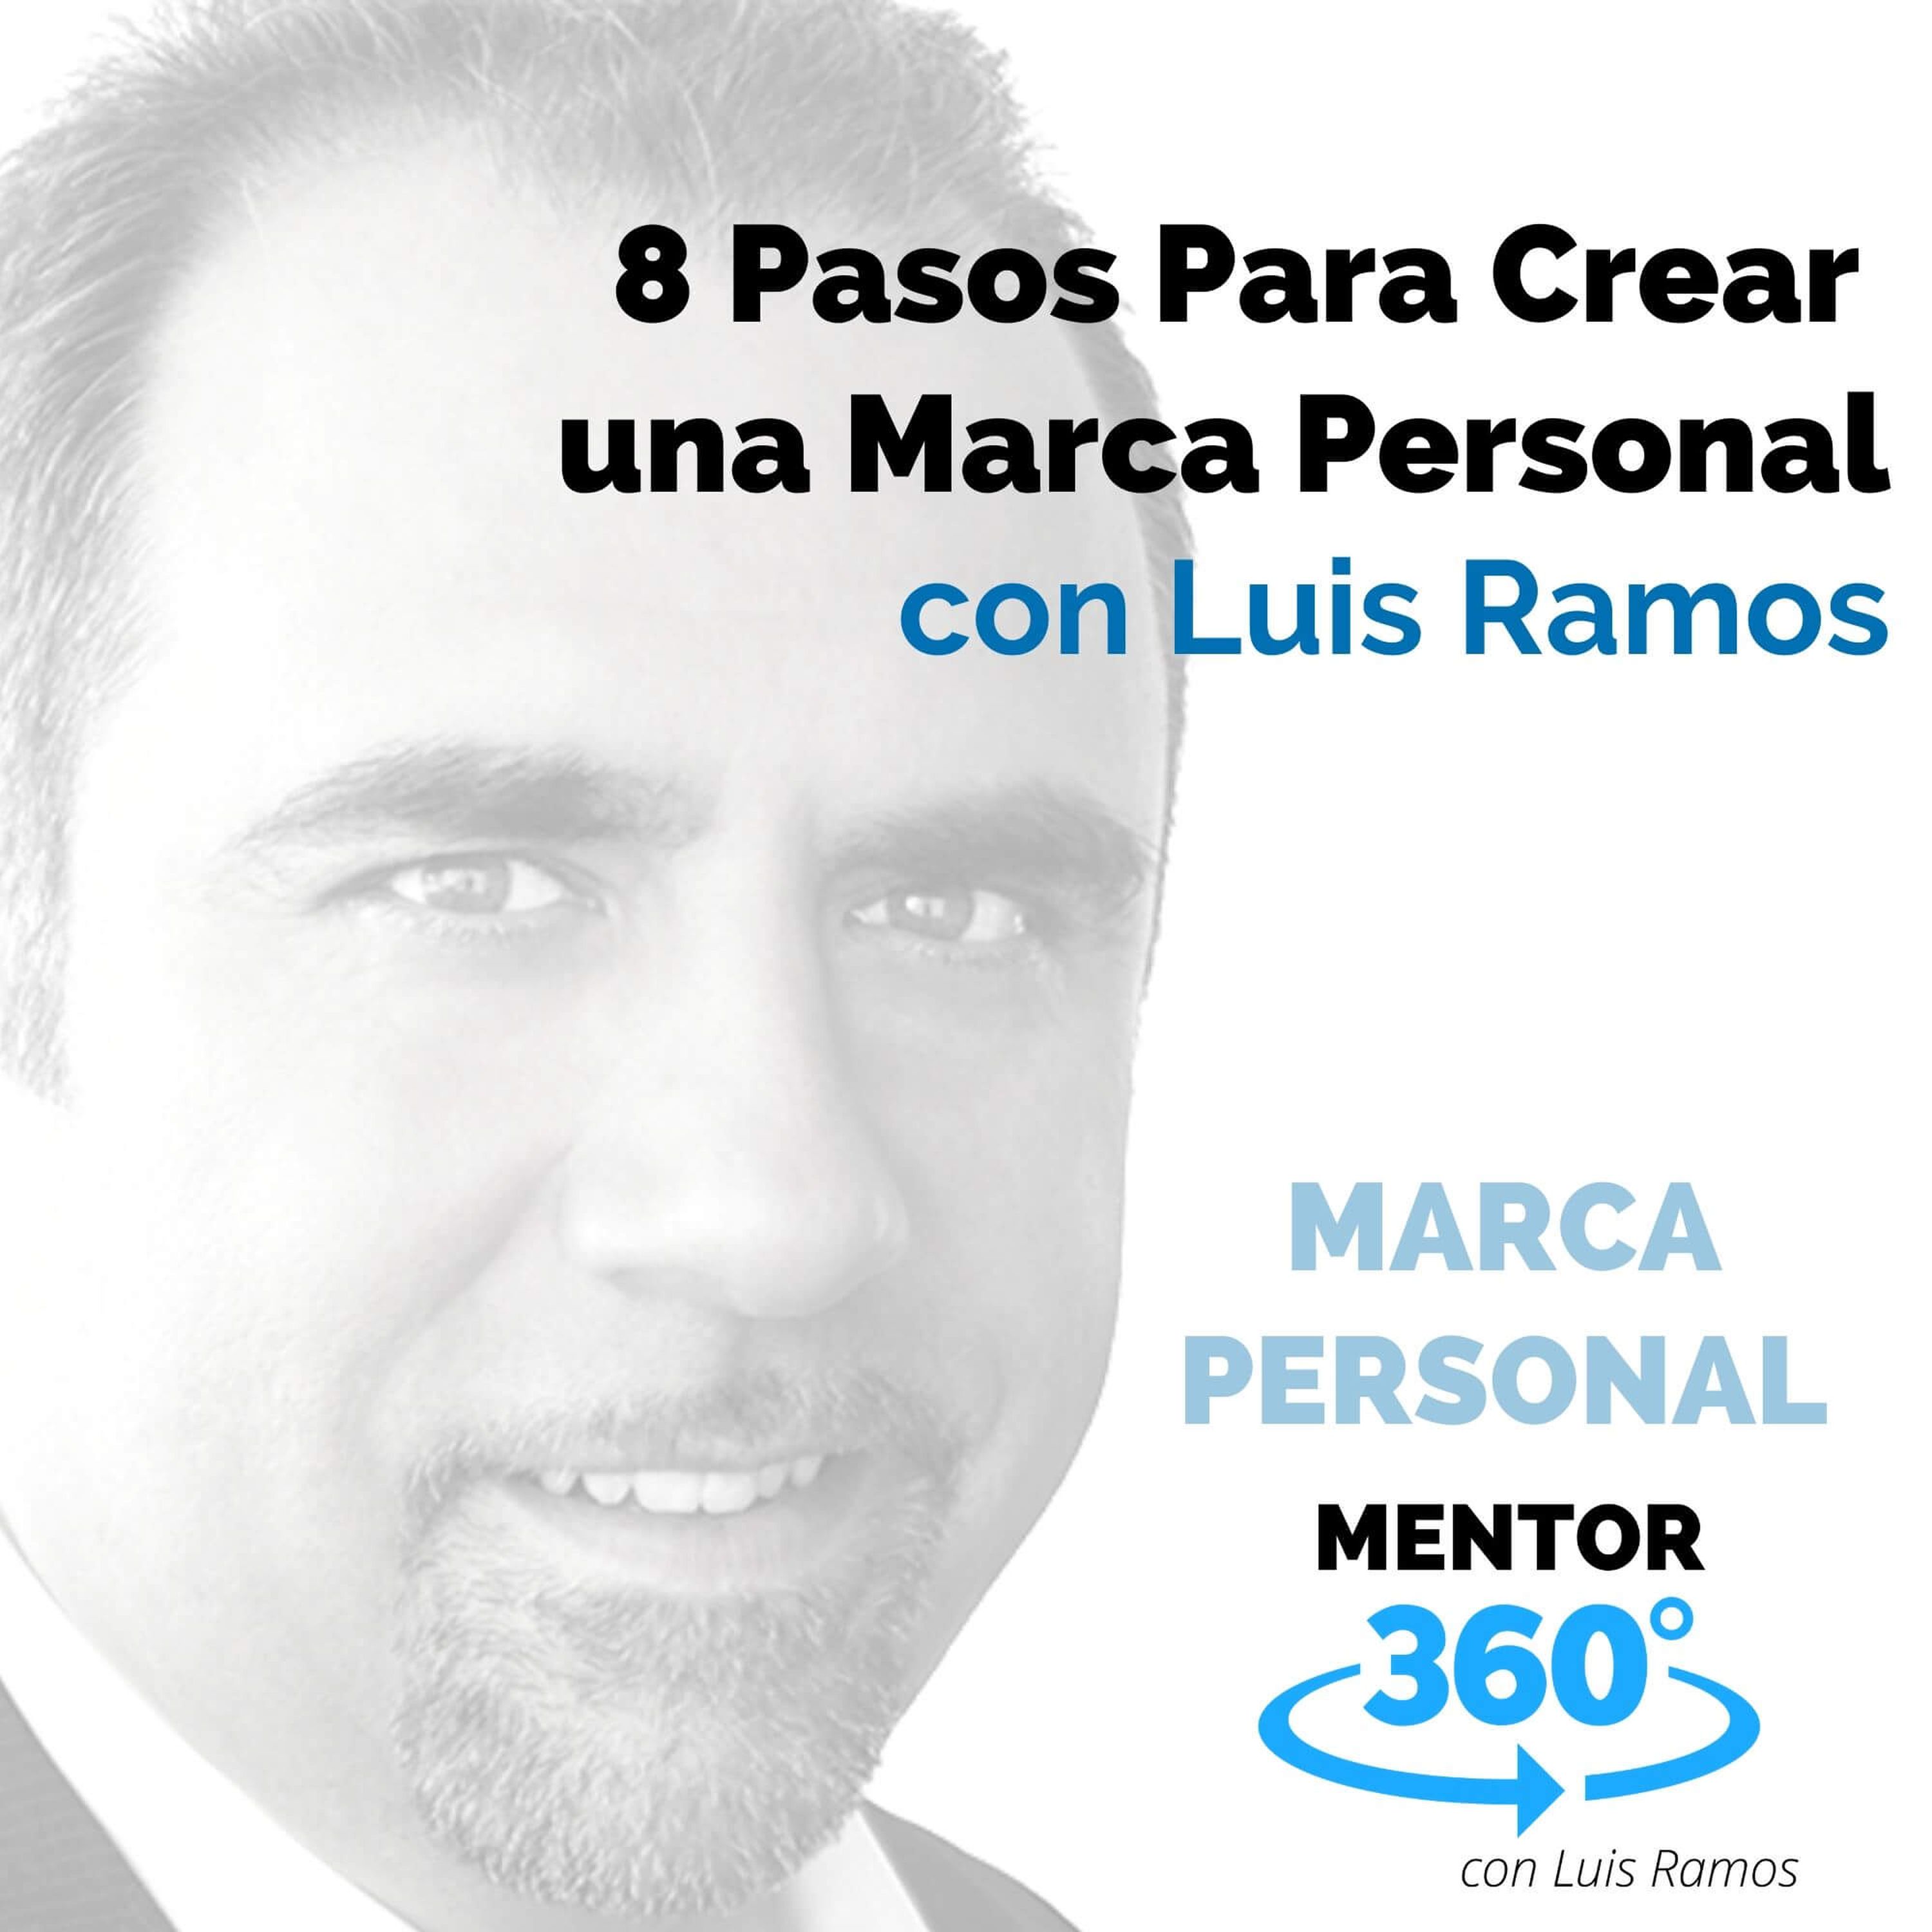 8 Pasos Para Crear una Marca Personal, con Luis Ramos - MARCA PERSONAL - MENTOR360